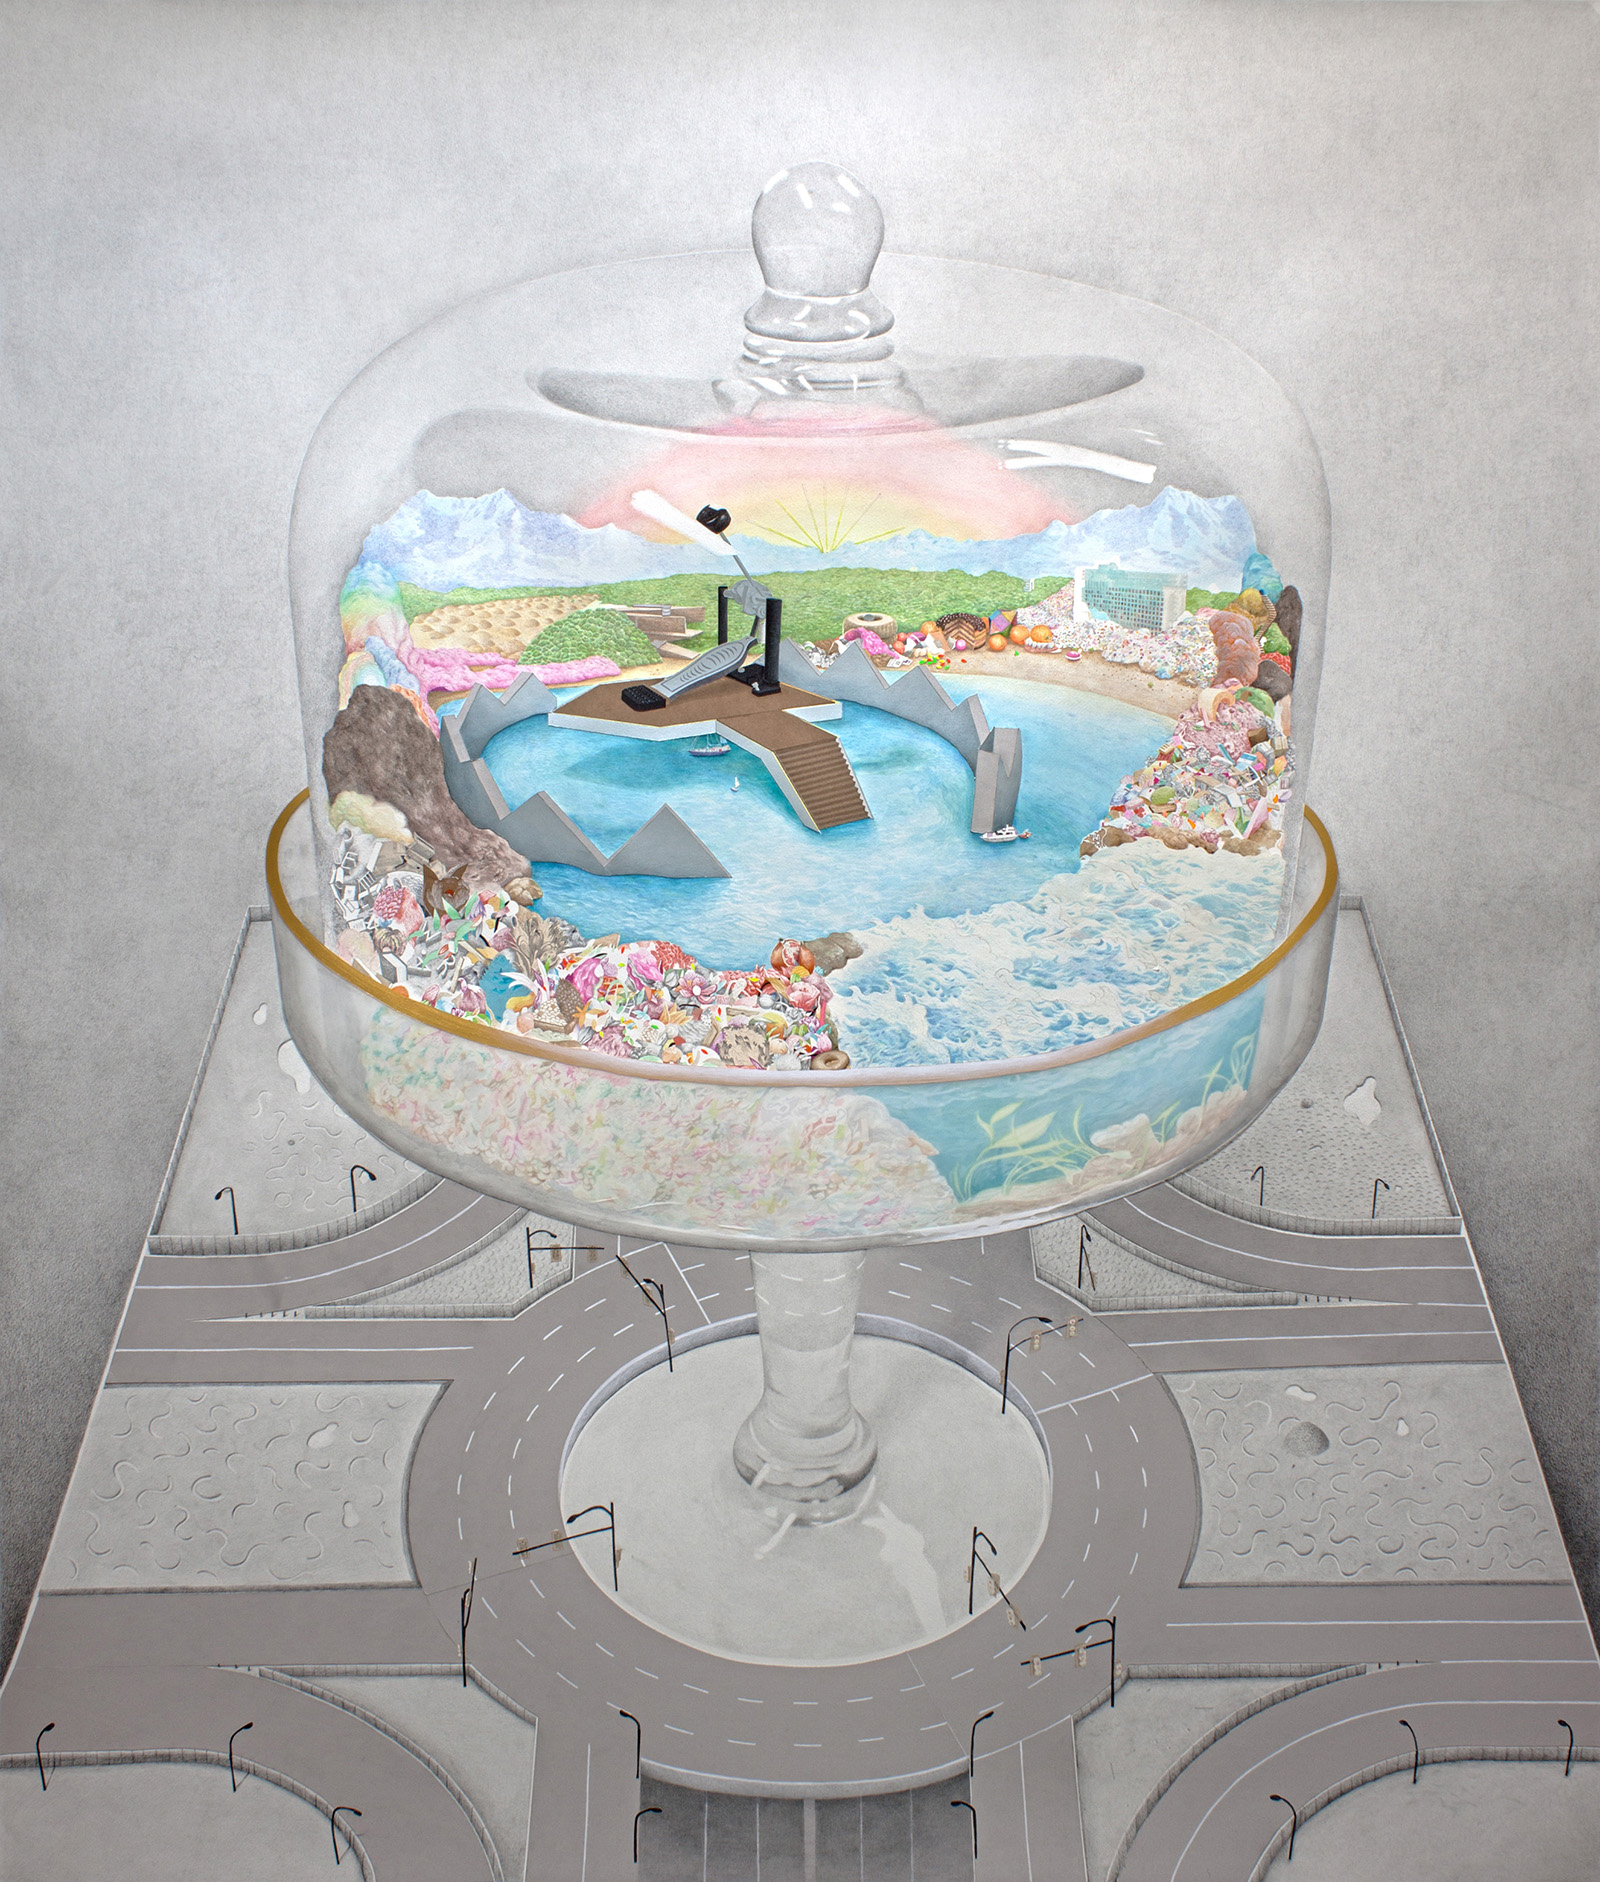 Turismo de interior. 2013. Acuarela, tinta, lápiz de color y collage sobre papel. 180 x 152 cm